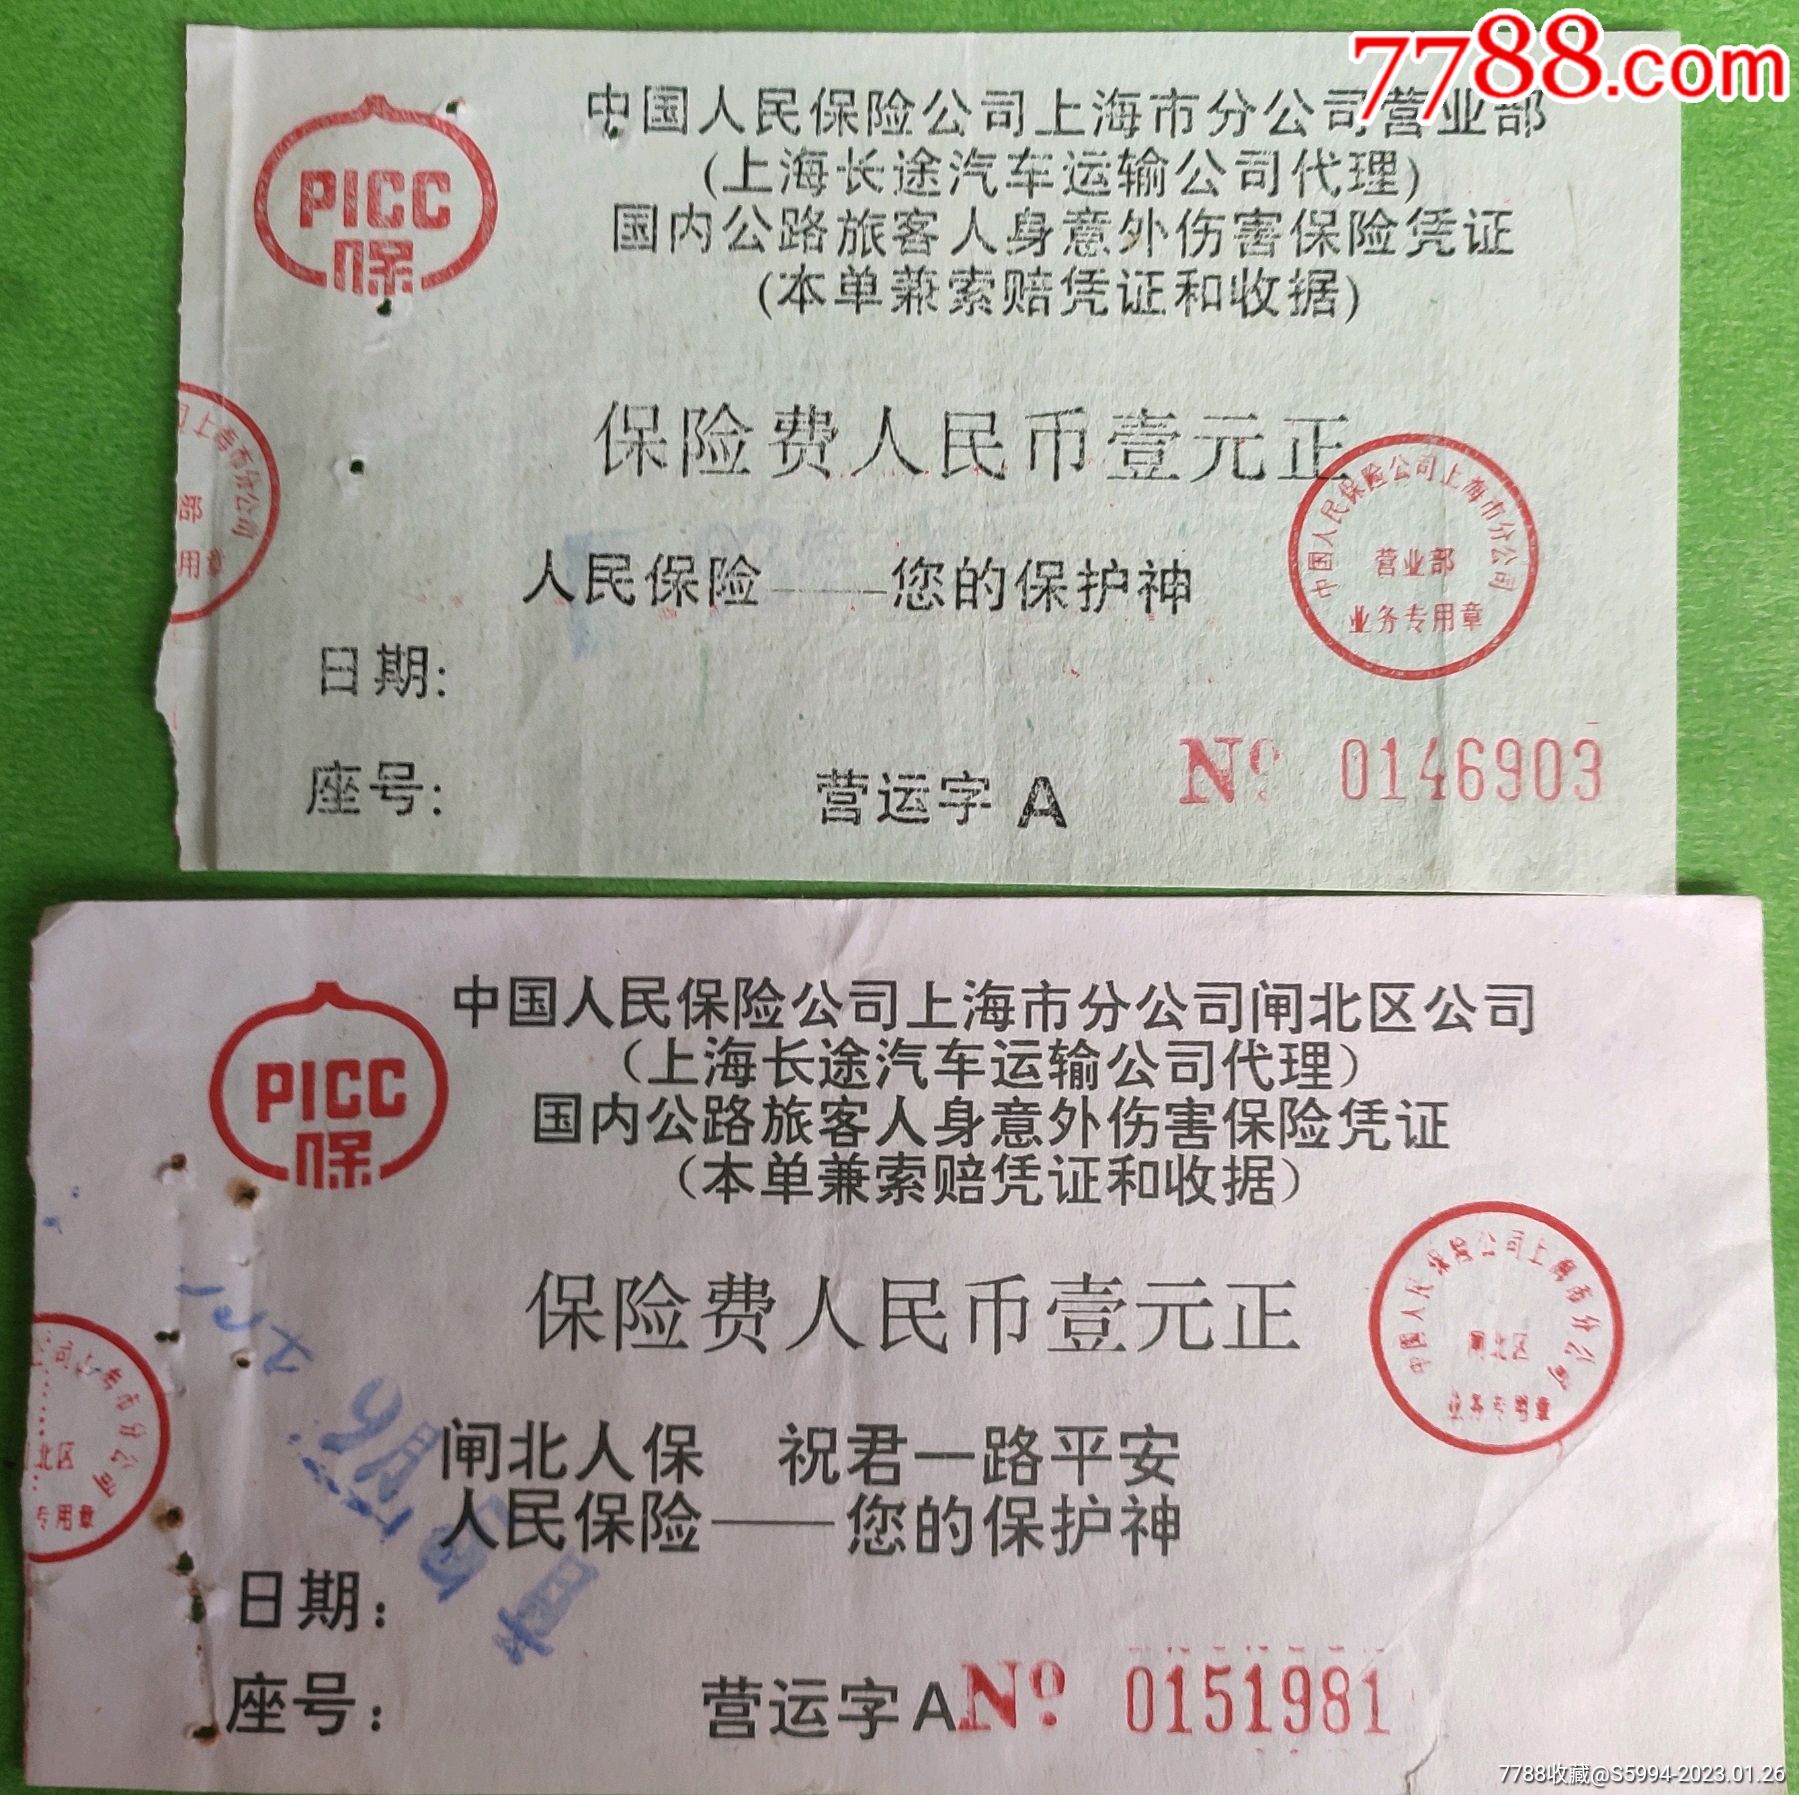 上海长途汽车旅客意外伤害保险凭证